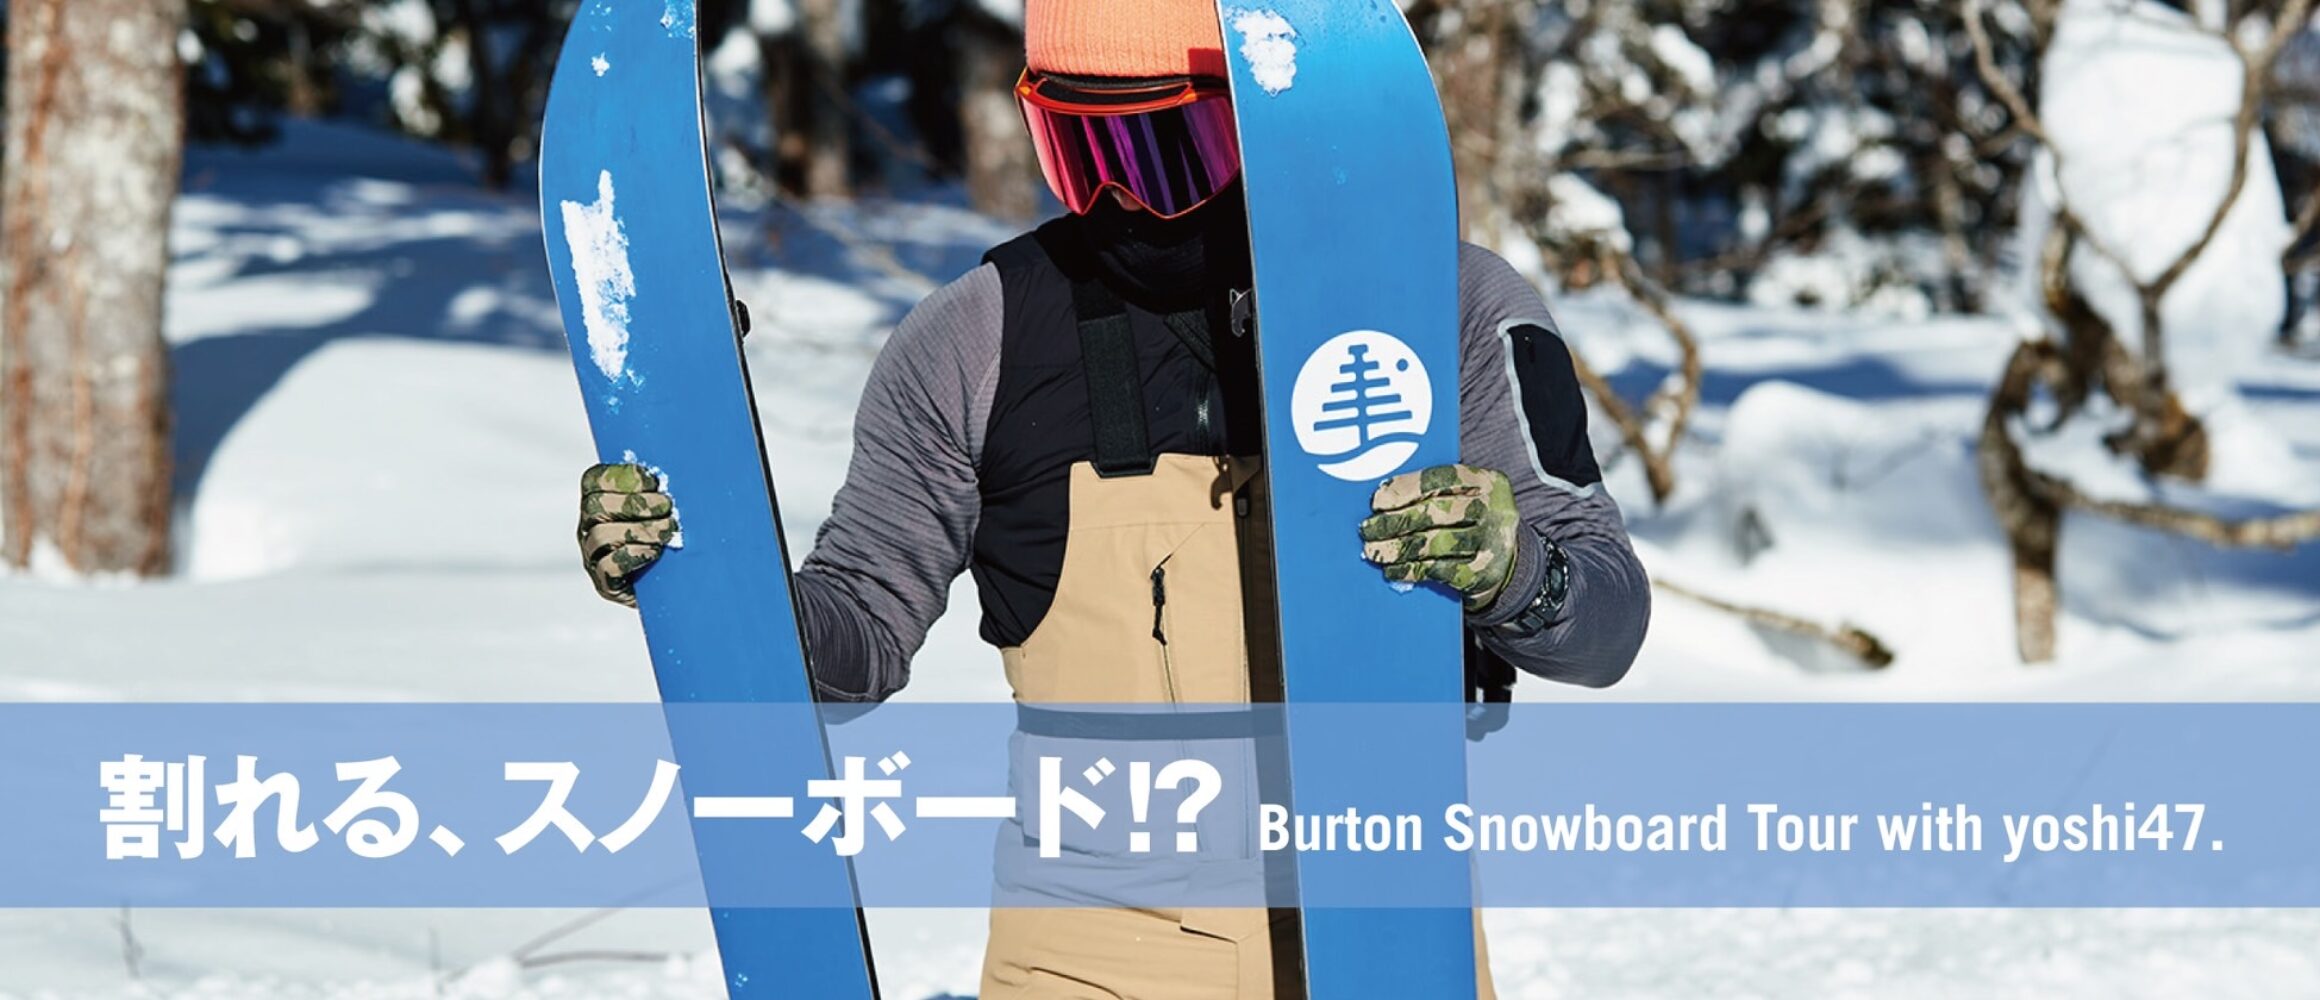 スノーボード履いて、山登り⁉︎ 「スプリットボード」を初体験してみた with Burton